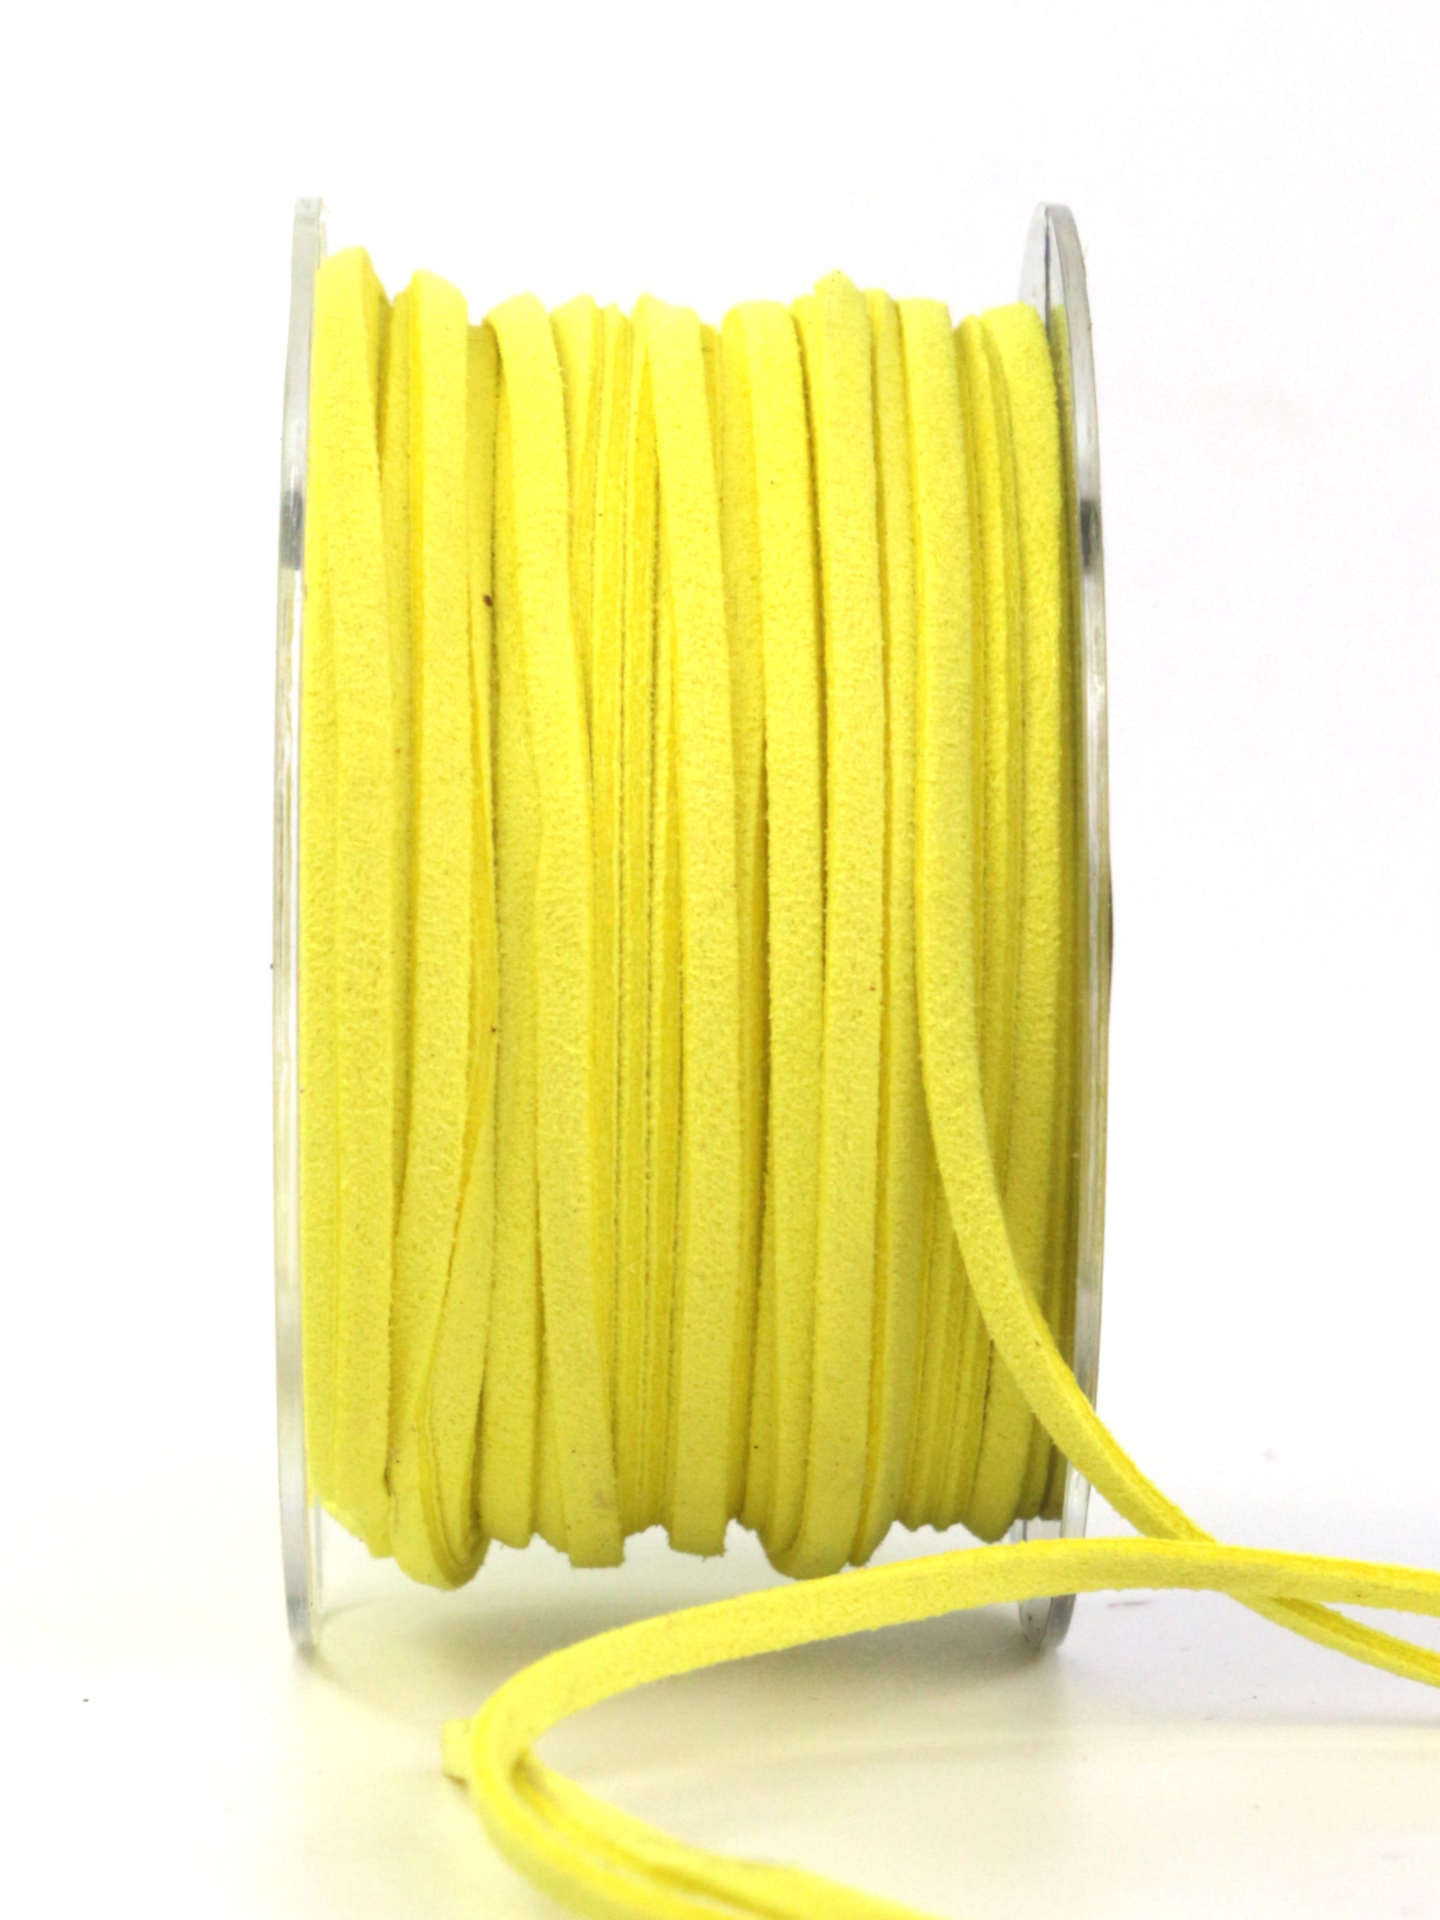 Lederschnur zum Basteln, gelb, 3 mm breit, 25 m Rolle - lederschnur, dekoband